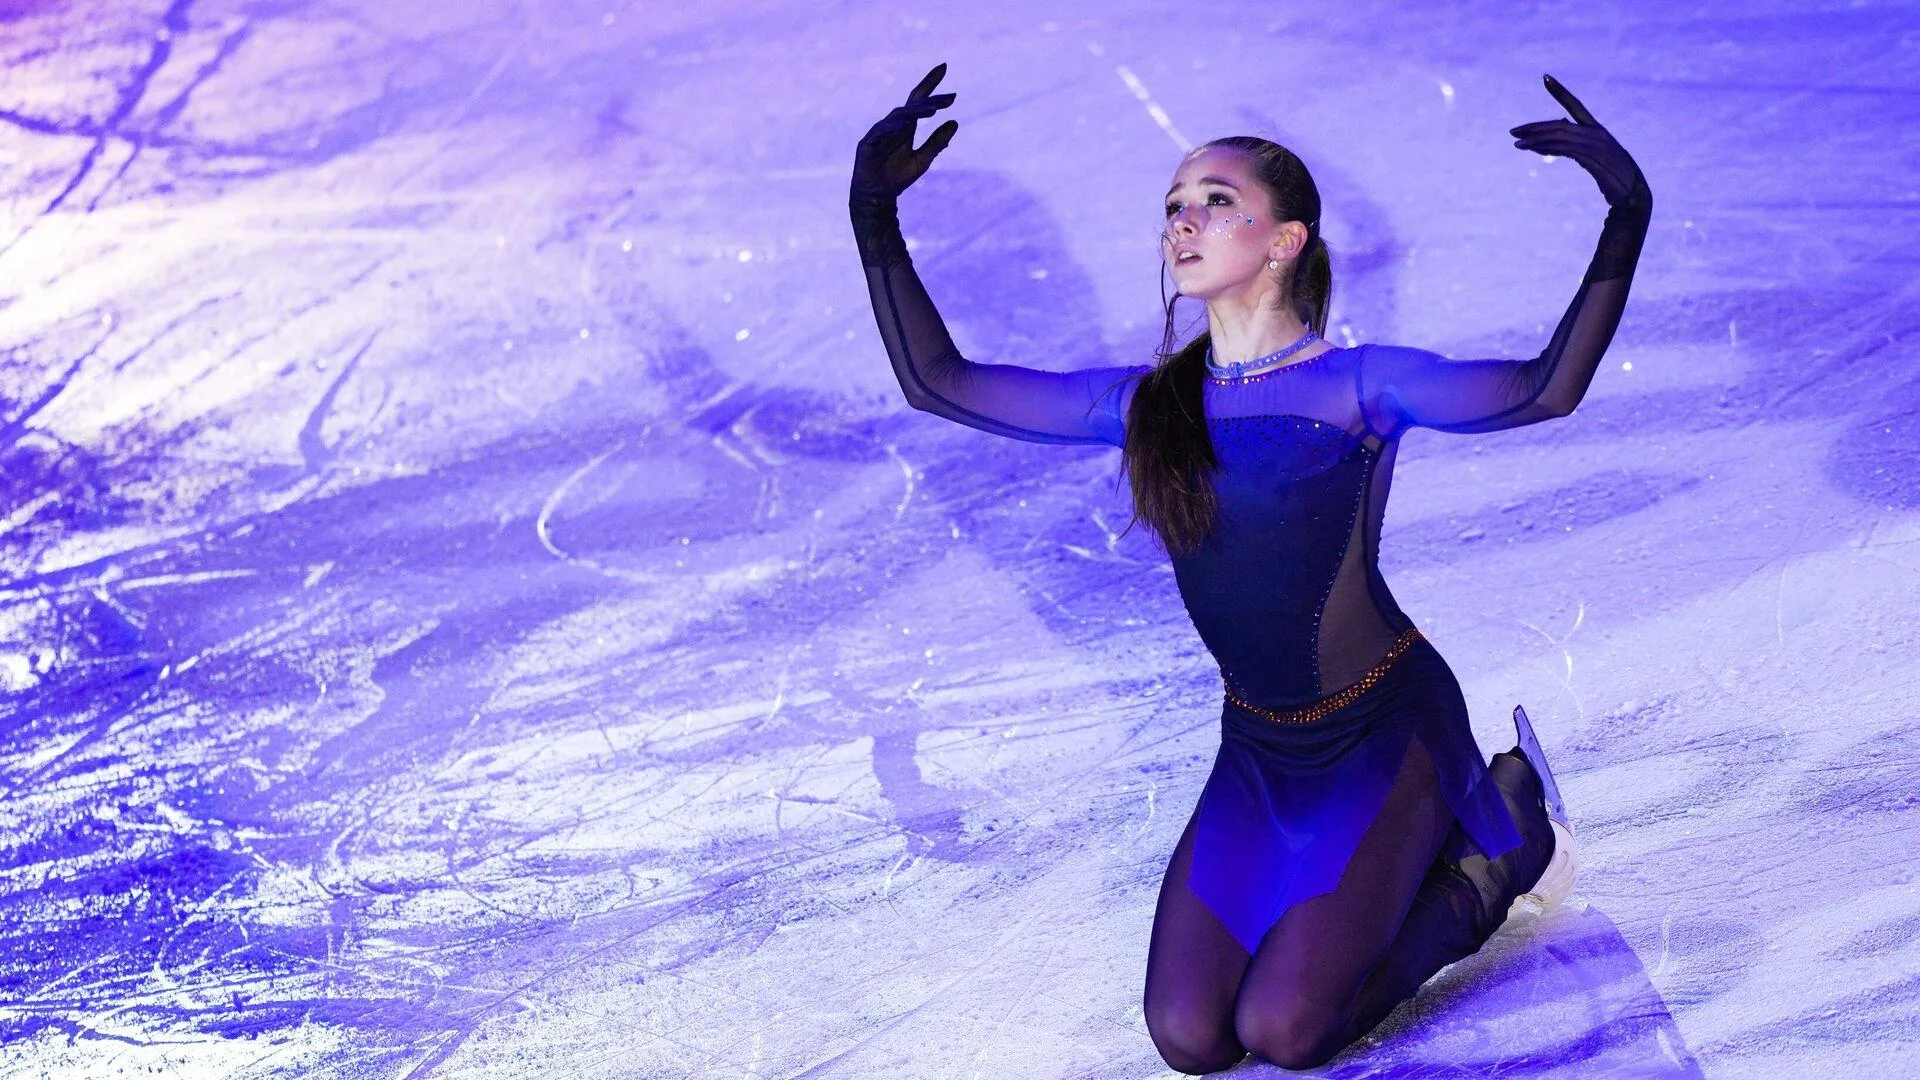 Отобрать олимпийские медали у фигуристок России призвали в США после отстранения Валиевой